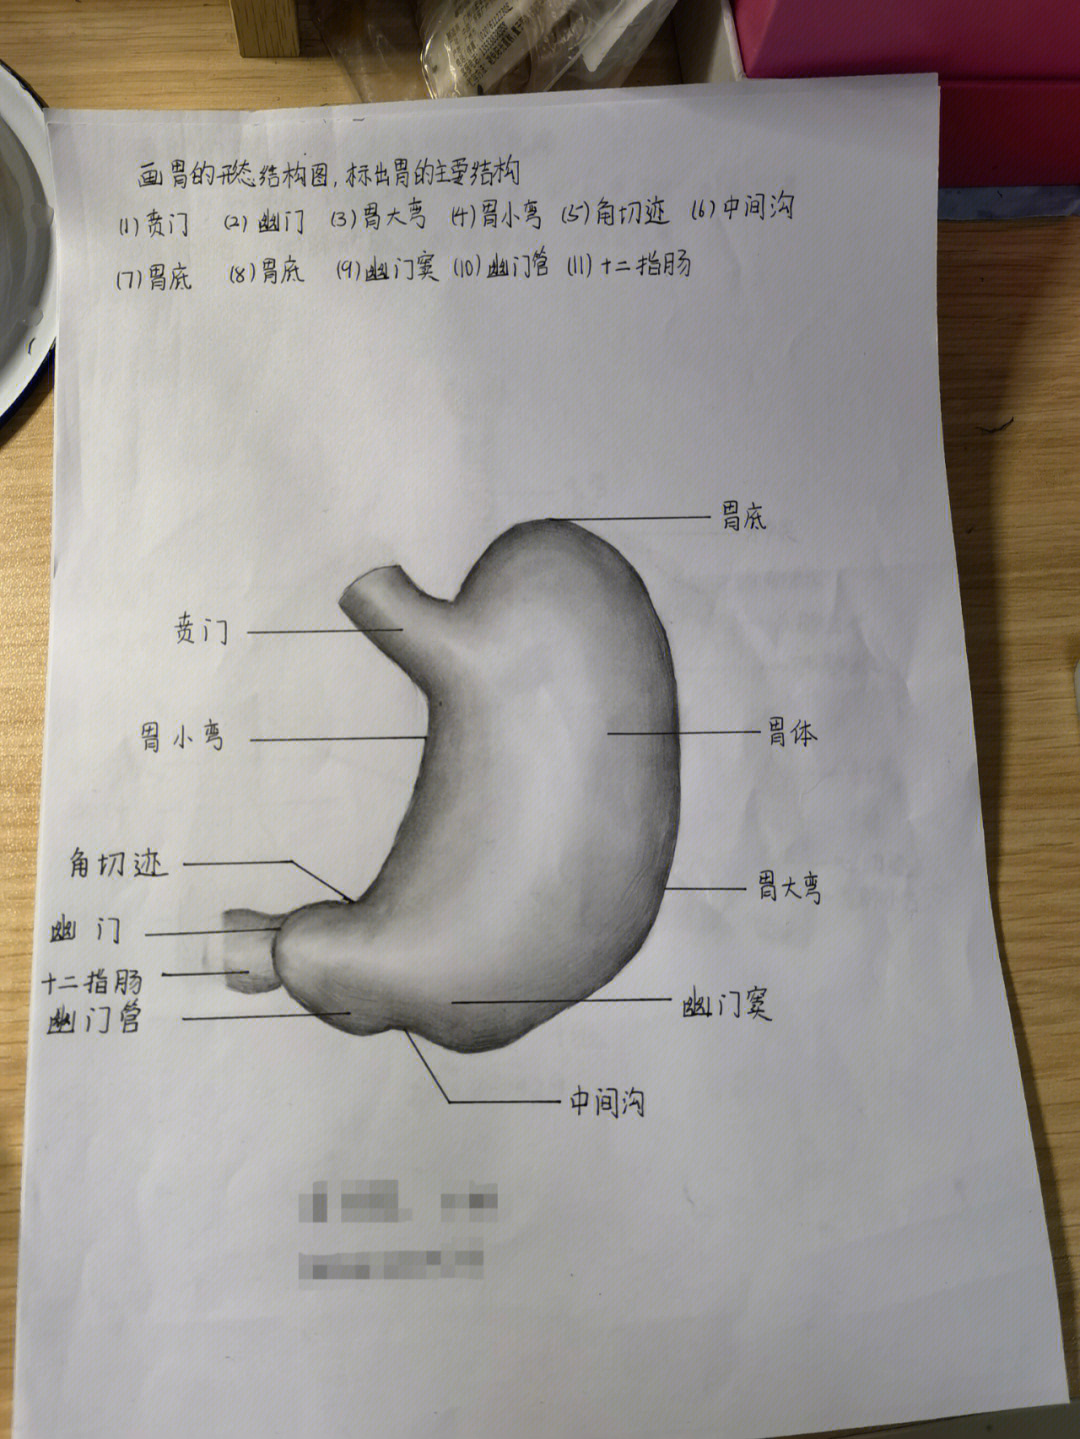 宝宝胃和大人胃比较图图片